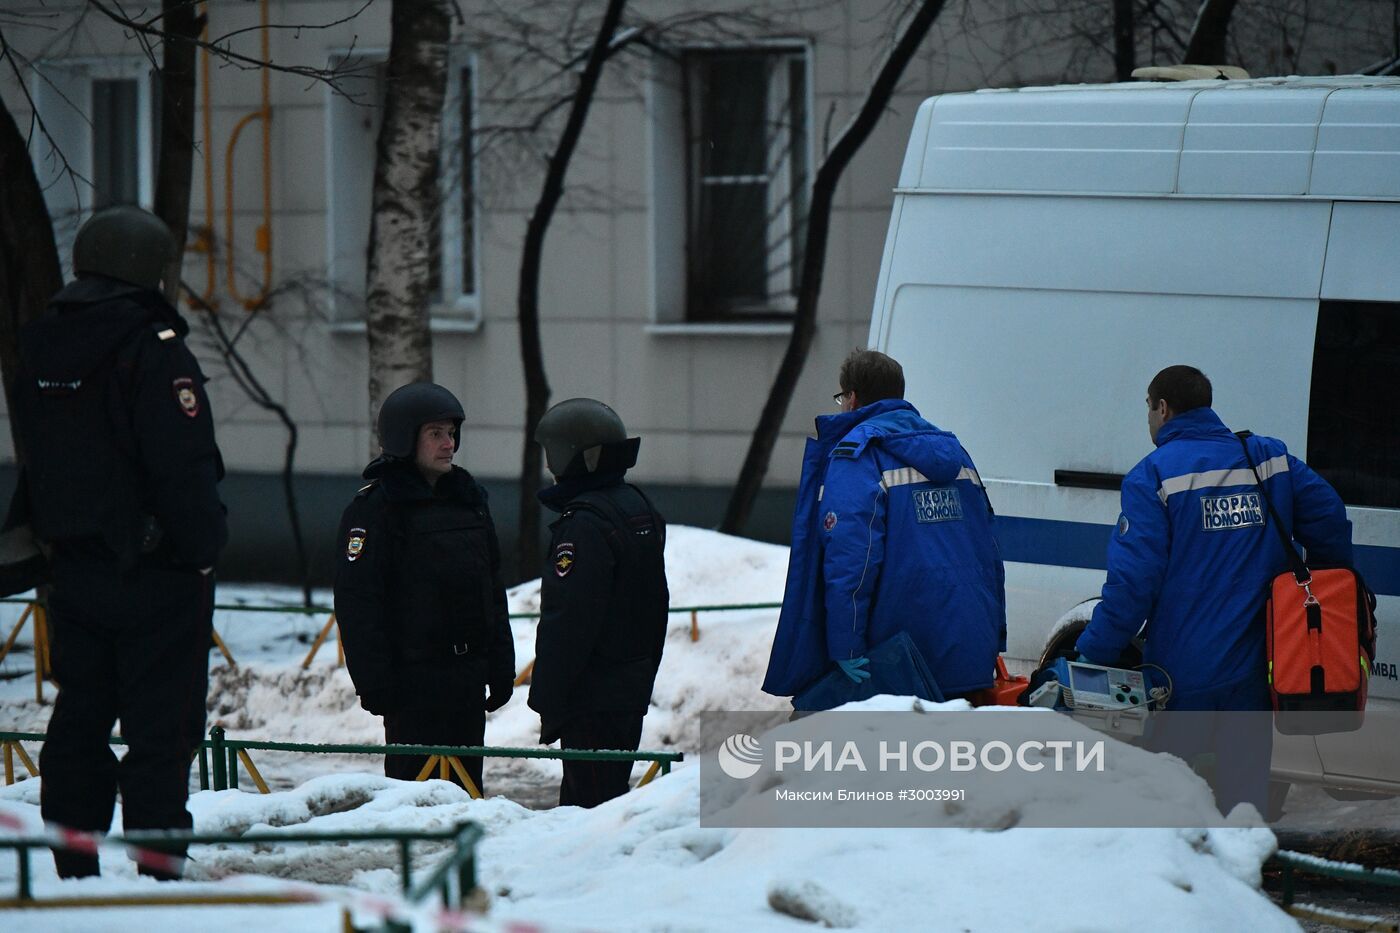 Ситуация на Ельнинской улице в Москве